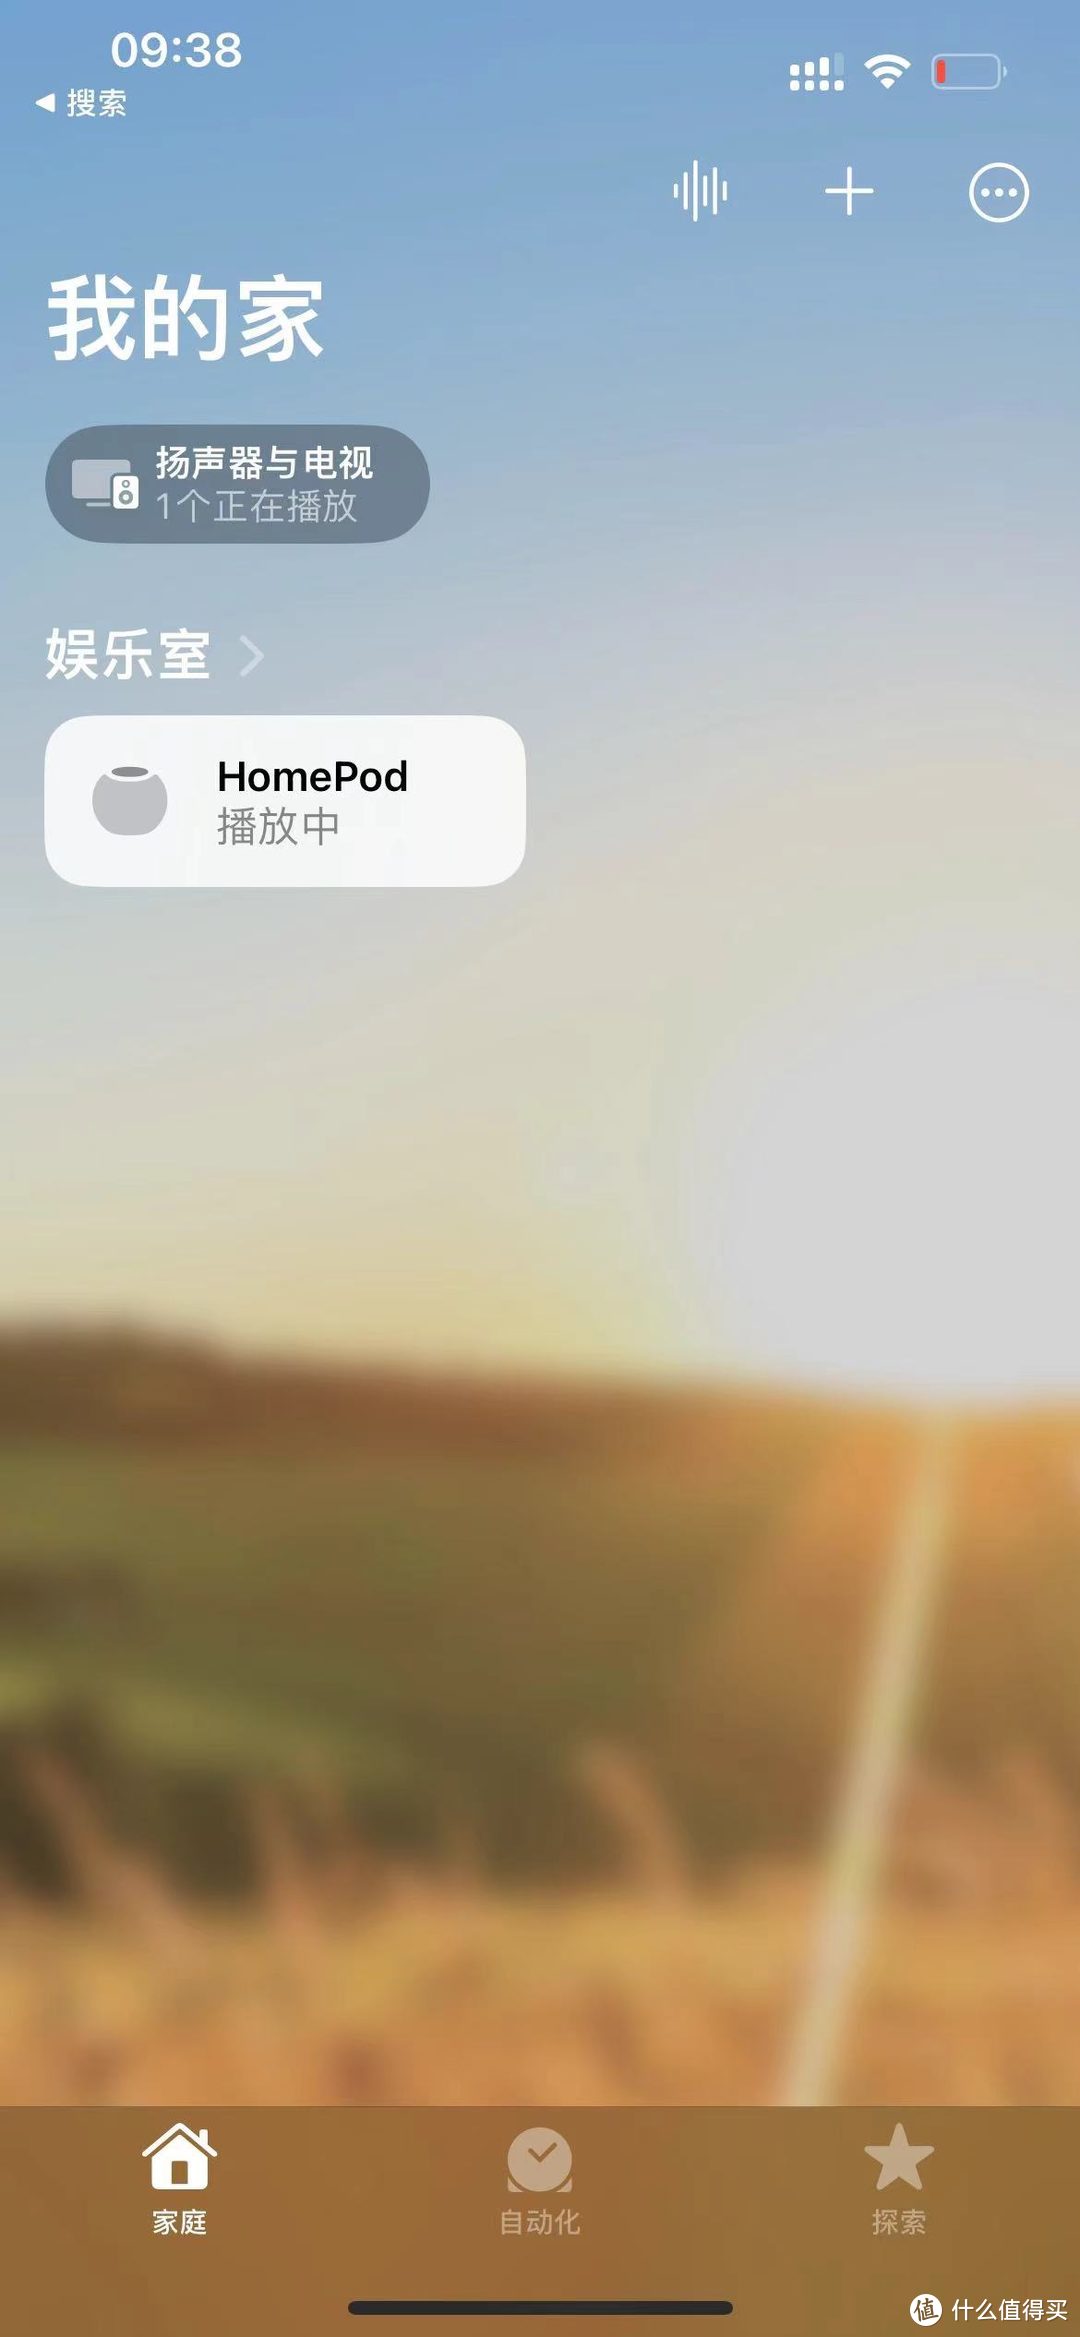 苹果HomePod Mini，听说它是苹果全家桶中性价比最高的